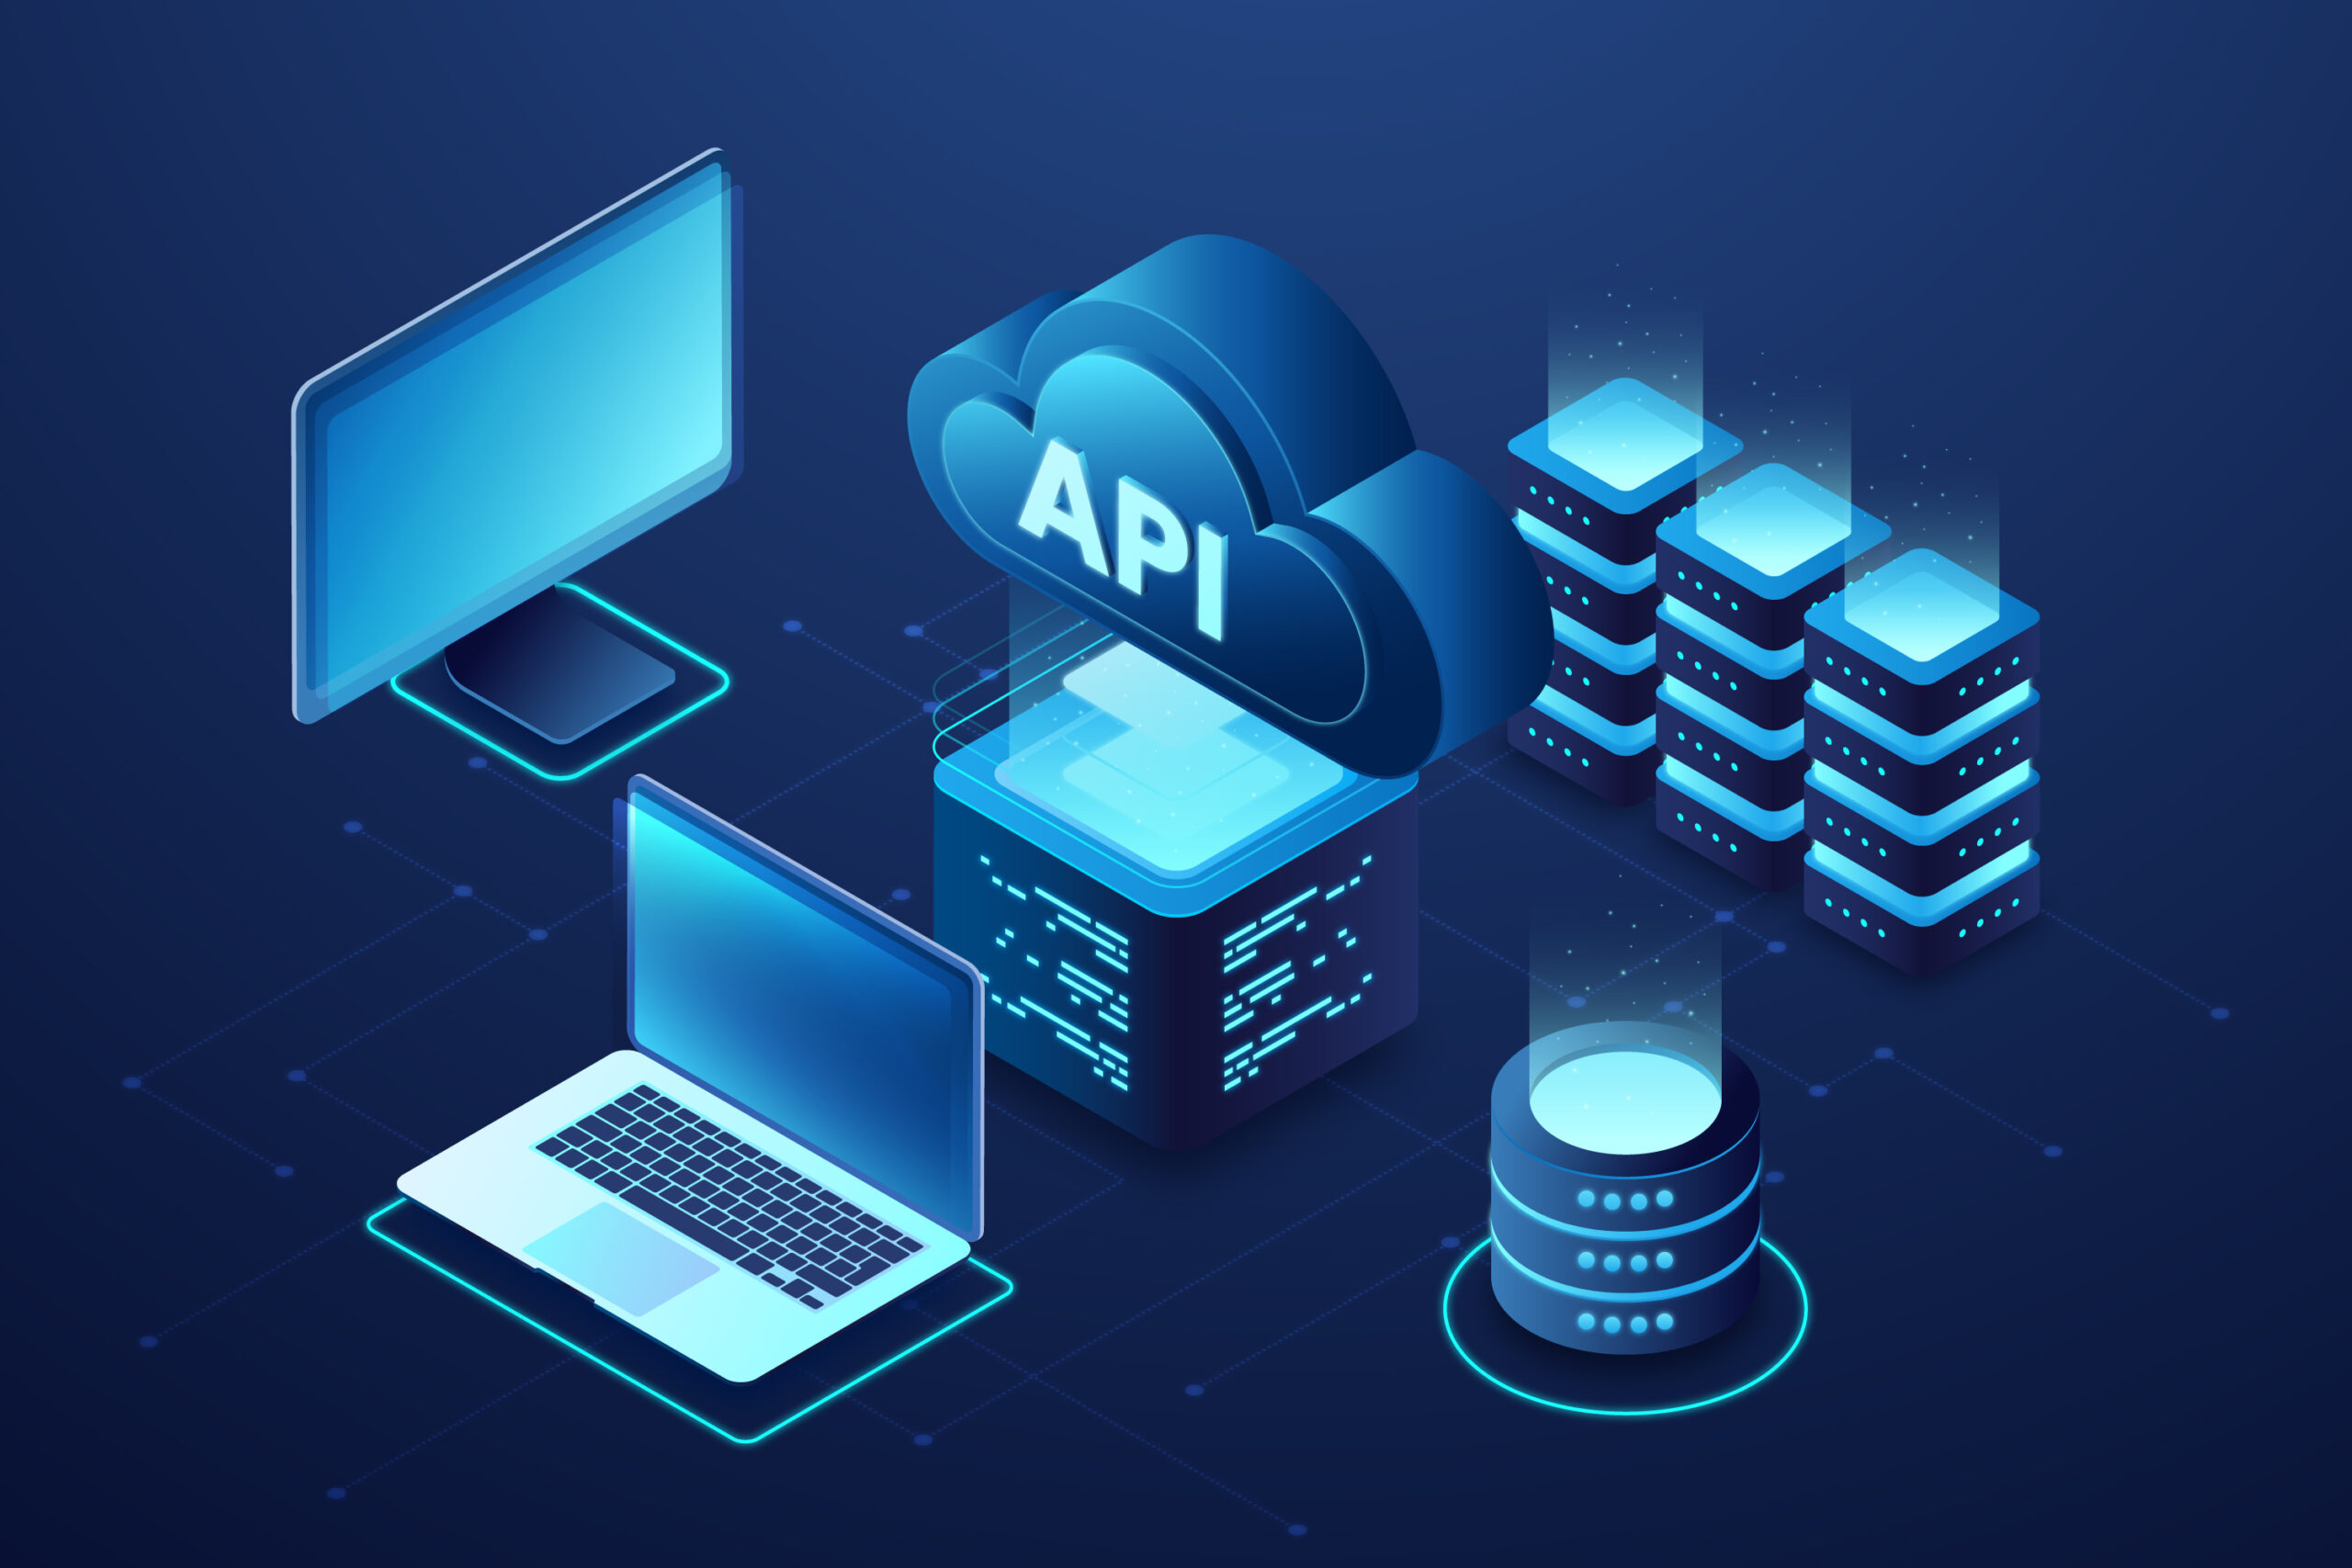 Eine Illustration von Cloud-APIs, Computern und Schnittstellen, die das Know-how von Skywize bei der Bereitstellung von Cloud-Technologielösungen und die Fähigkeit zur Integration und Verbindung verschiedener Systeme veranschaulicht